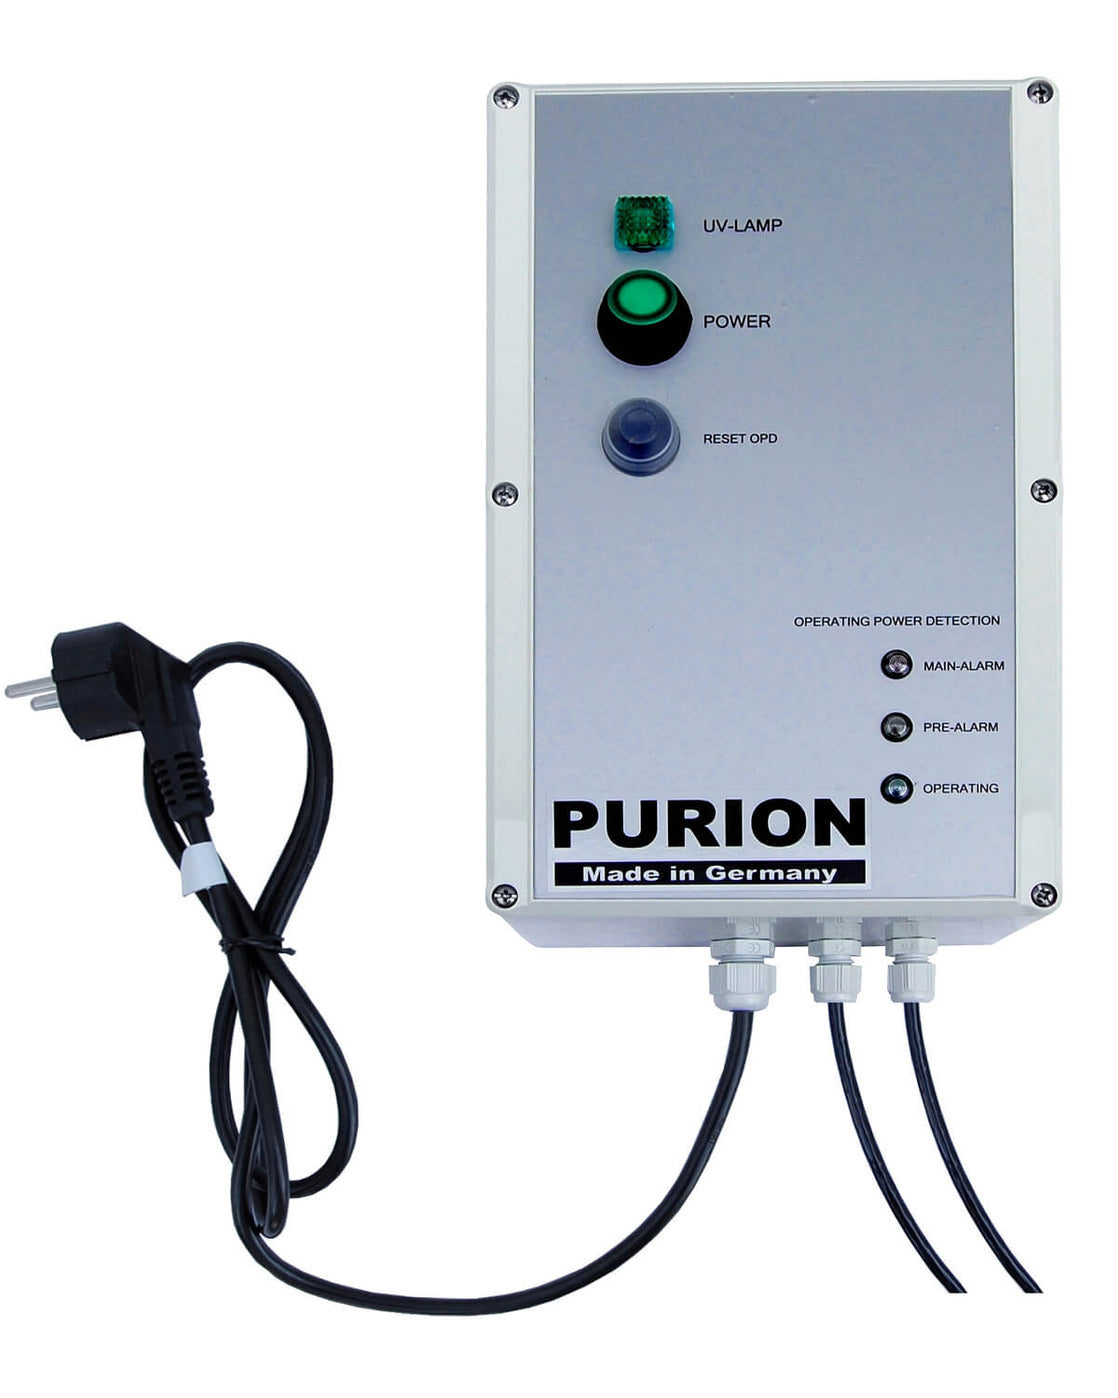 Nutzen Sie PURION 2001 OPD Extra der PURION GmbH zur effektiven Poolpflege und zur Vorbeugung des Algenwachstums.